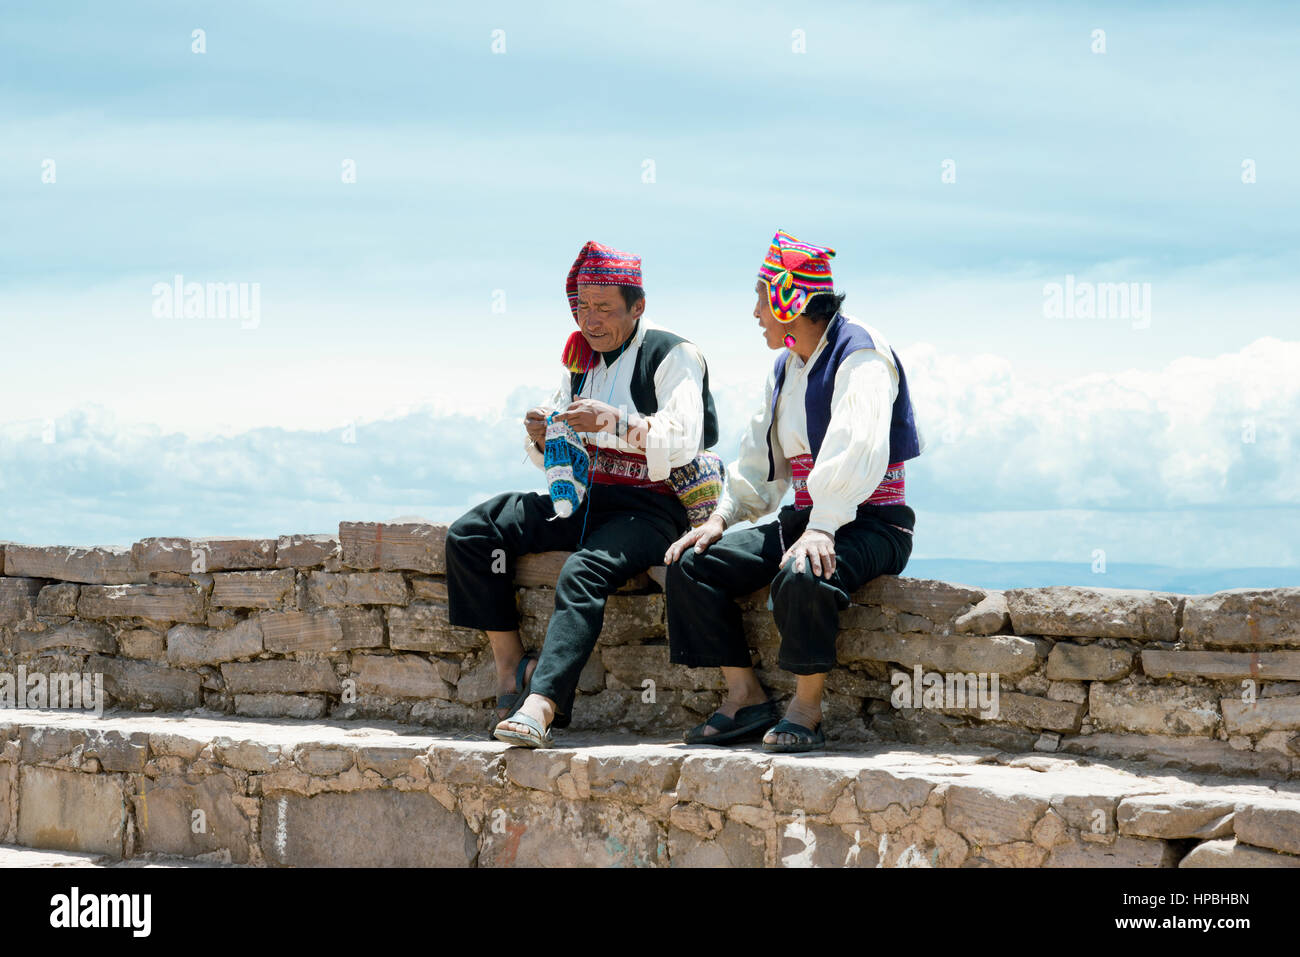 Zwei Männer gekleidet in traditionellen Outfits, die spezifisch für die Insel Taquile-Region, einer von ihnen eine Mütze stricken. Titicacasee, Peru - 17. Oktober 2012 Stockfoto